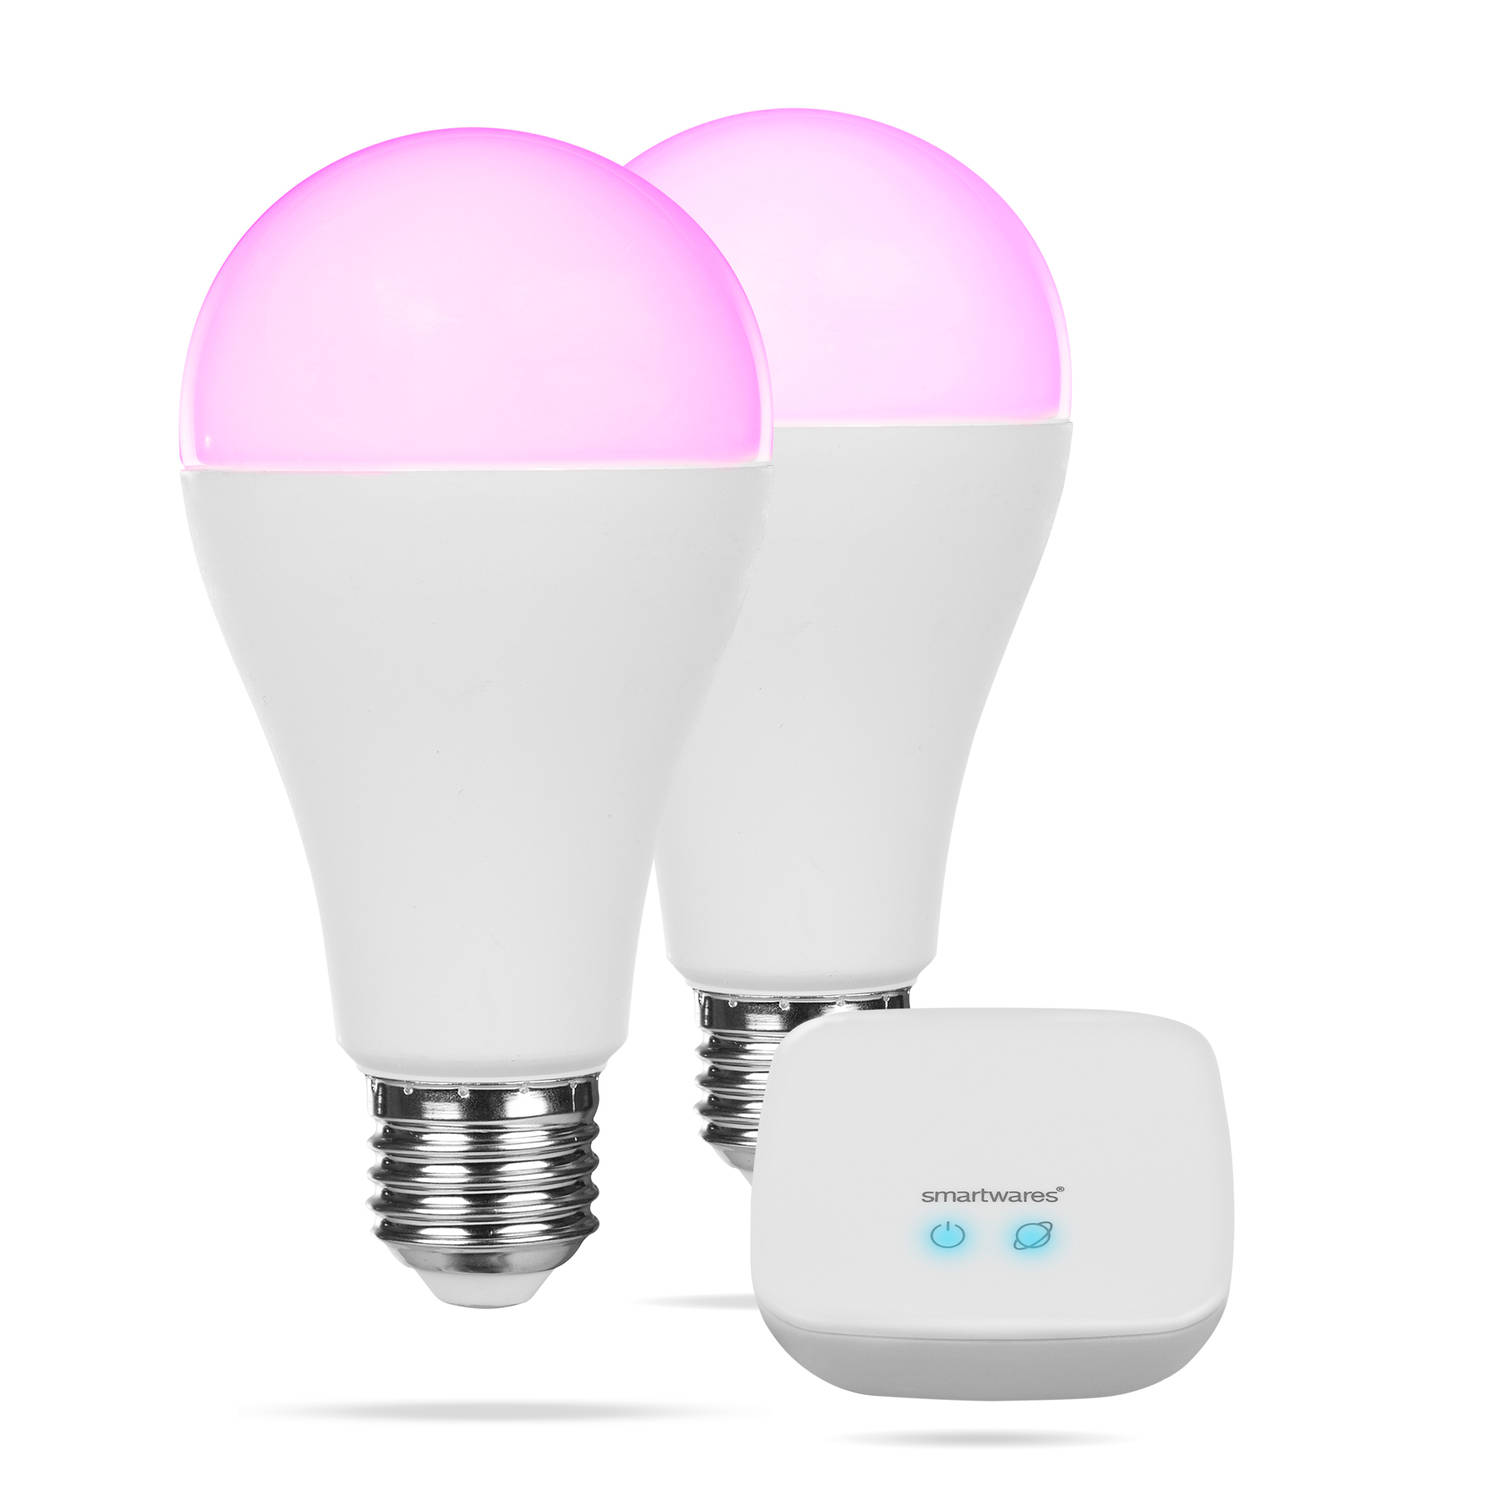 Smartwares slimme kleurlampen - PRO Series